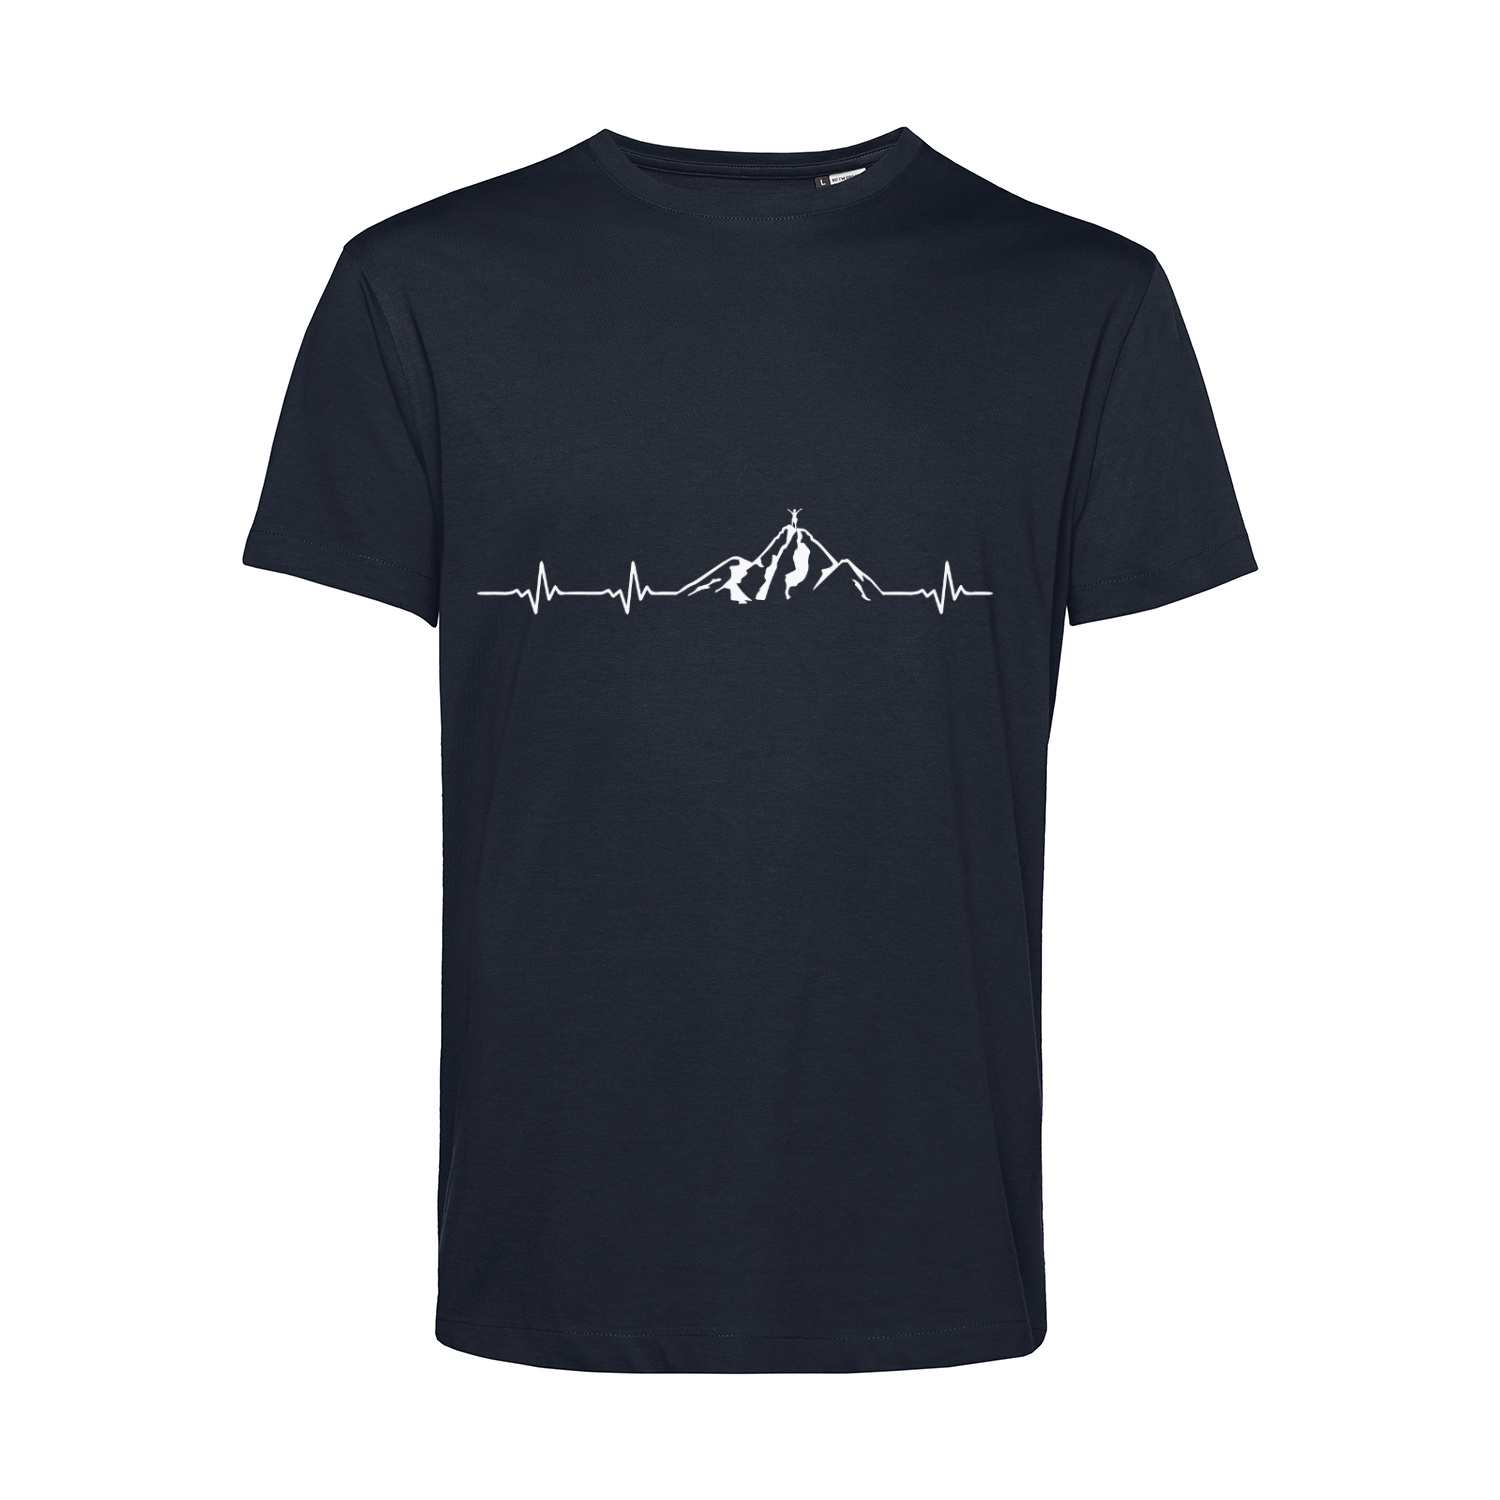 Nachhaltiges T-Shirt Herren Outdoor - Herzstromkurve